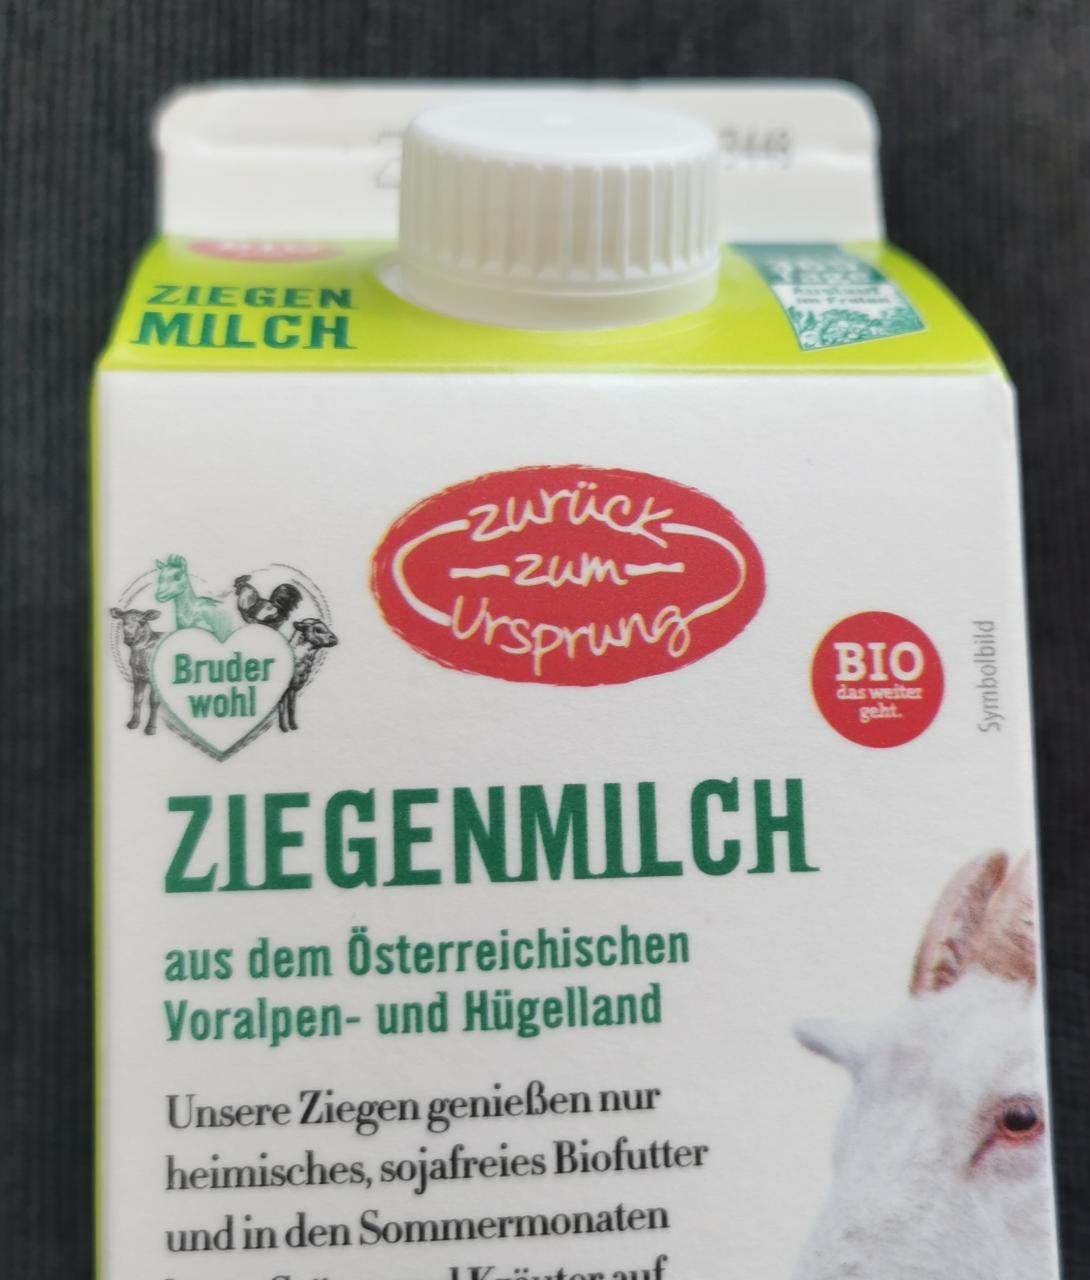 Fotografie - Bio Ziegenmilch aus dem Österreichischen Voralpen - und Hügelland Zurück zum Ursprung